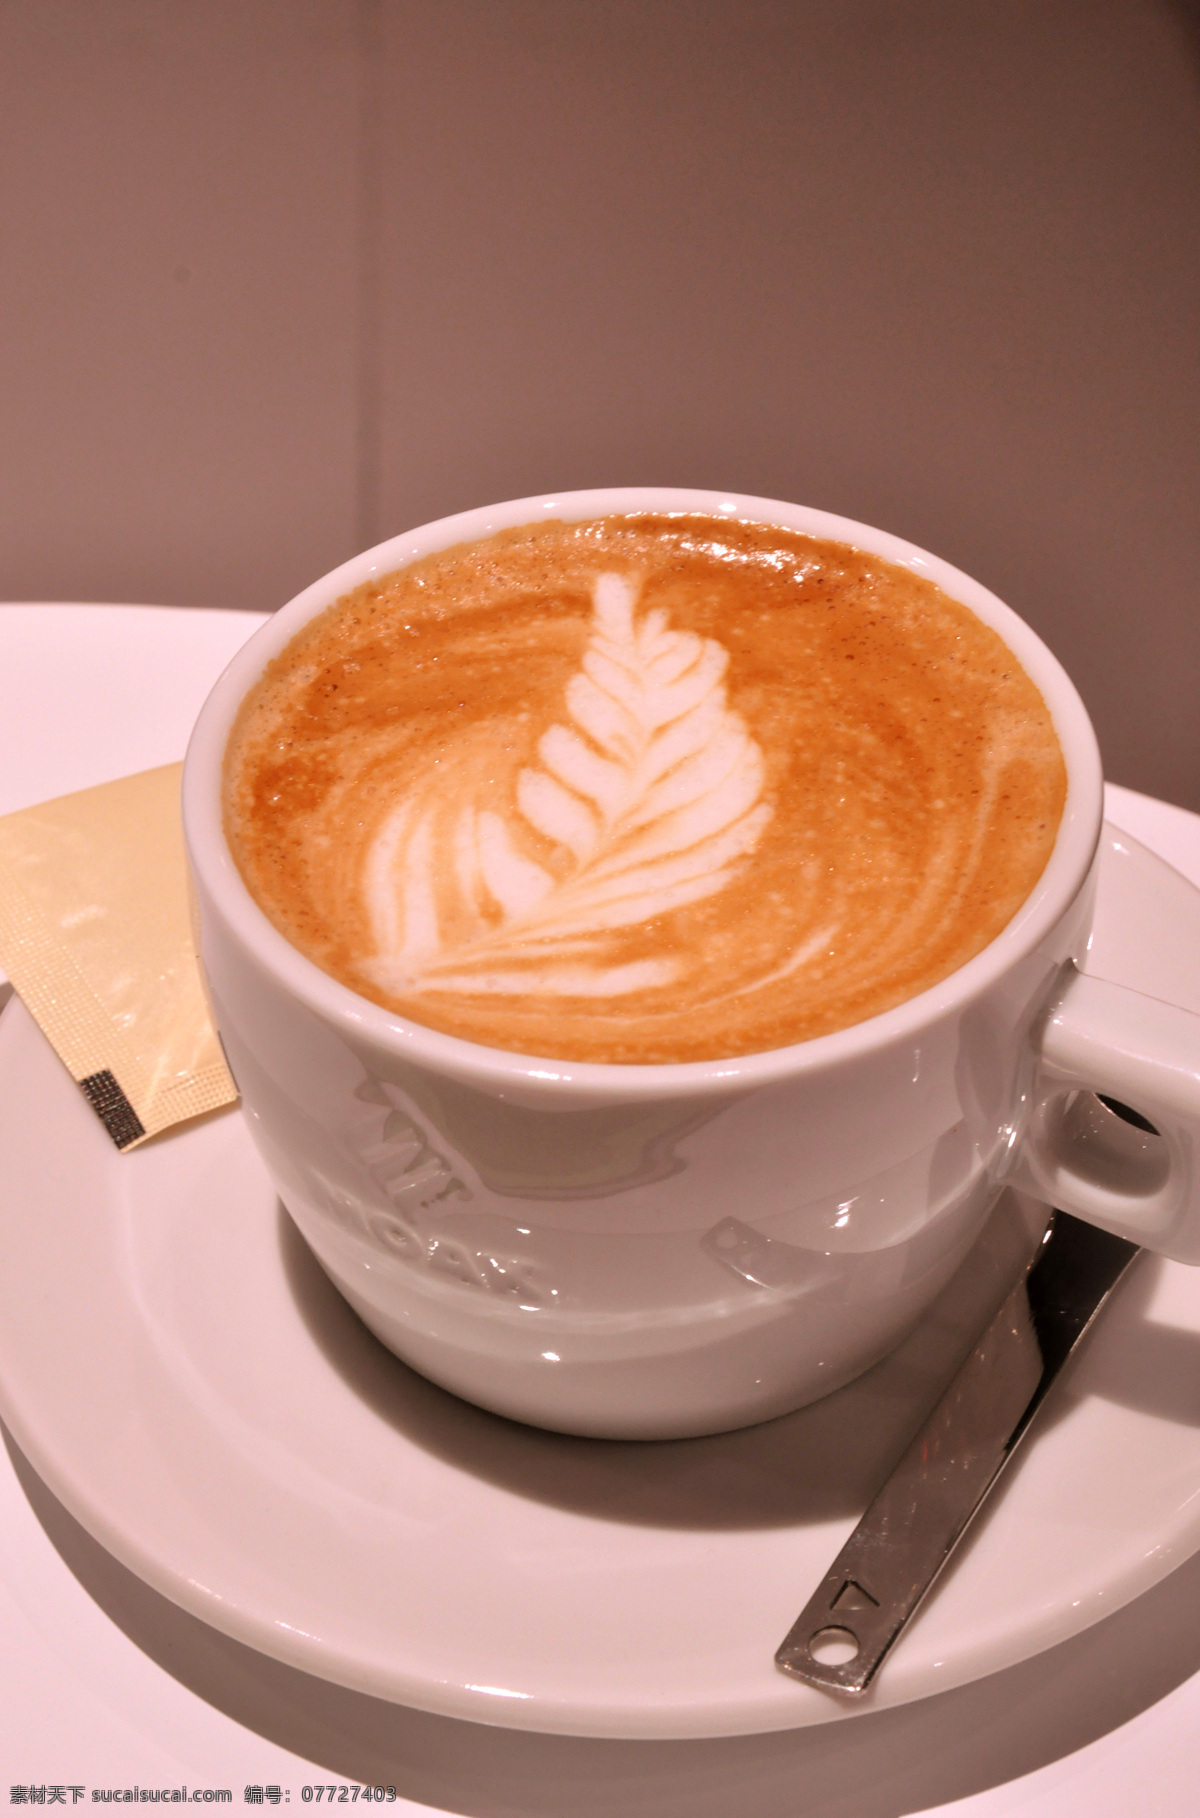 摩卡咖啡 咖啡泡 艺术咖啡 咖啡杯 香浓咖啡 饮料酒水 餐饮美食